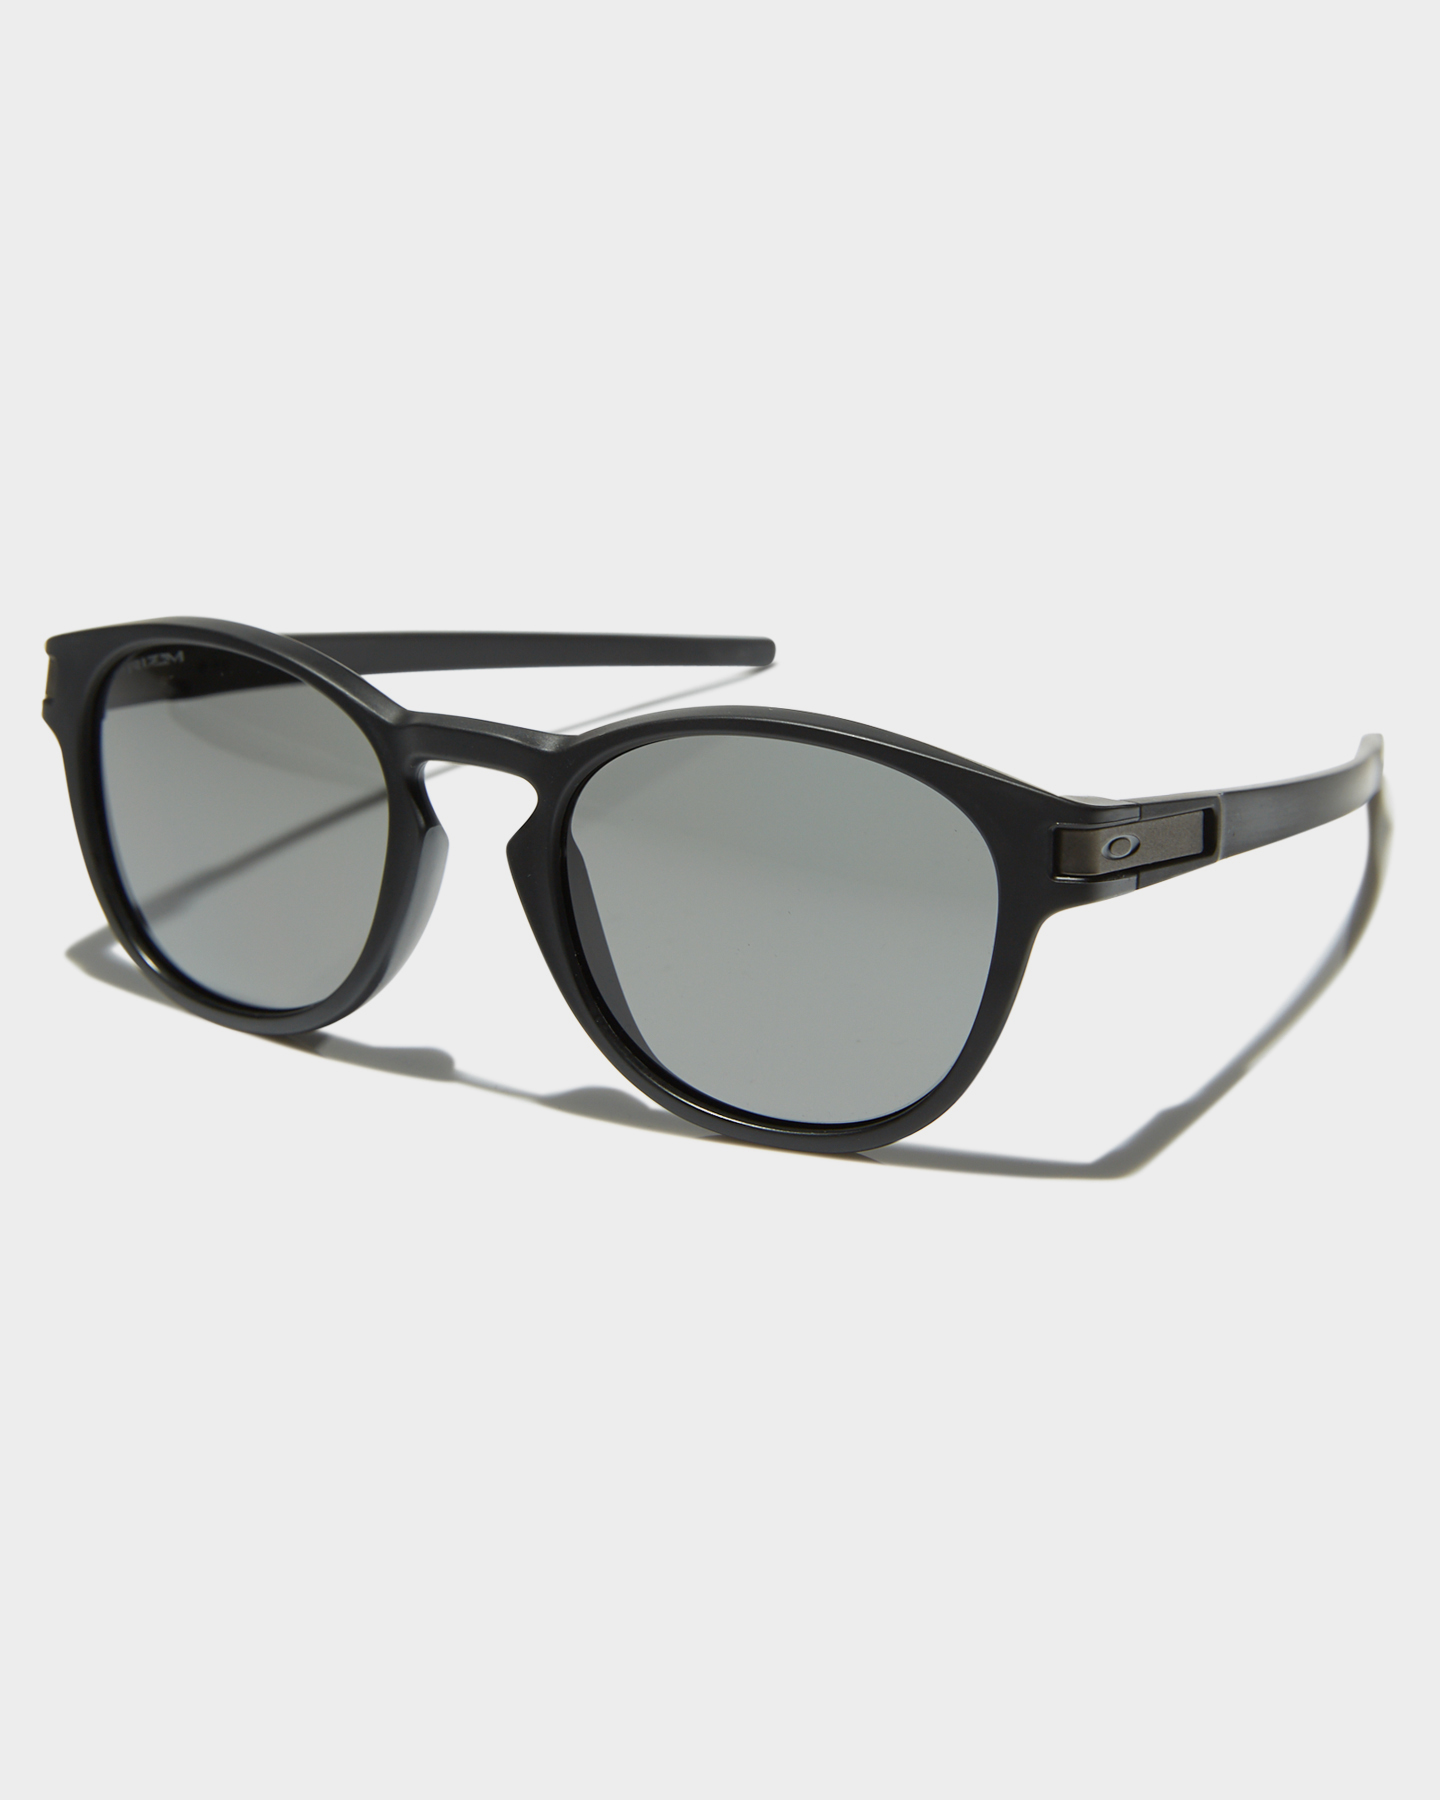 gray oakley sunglasses